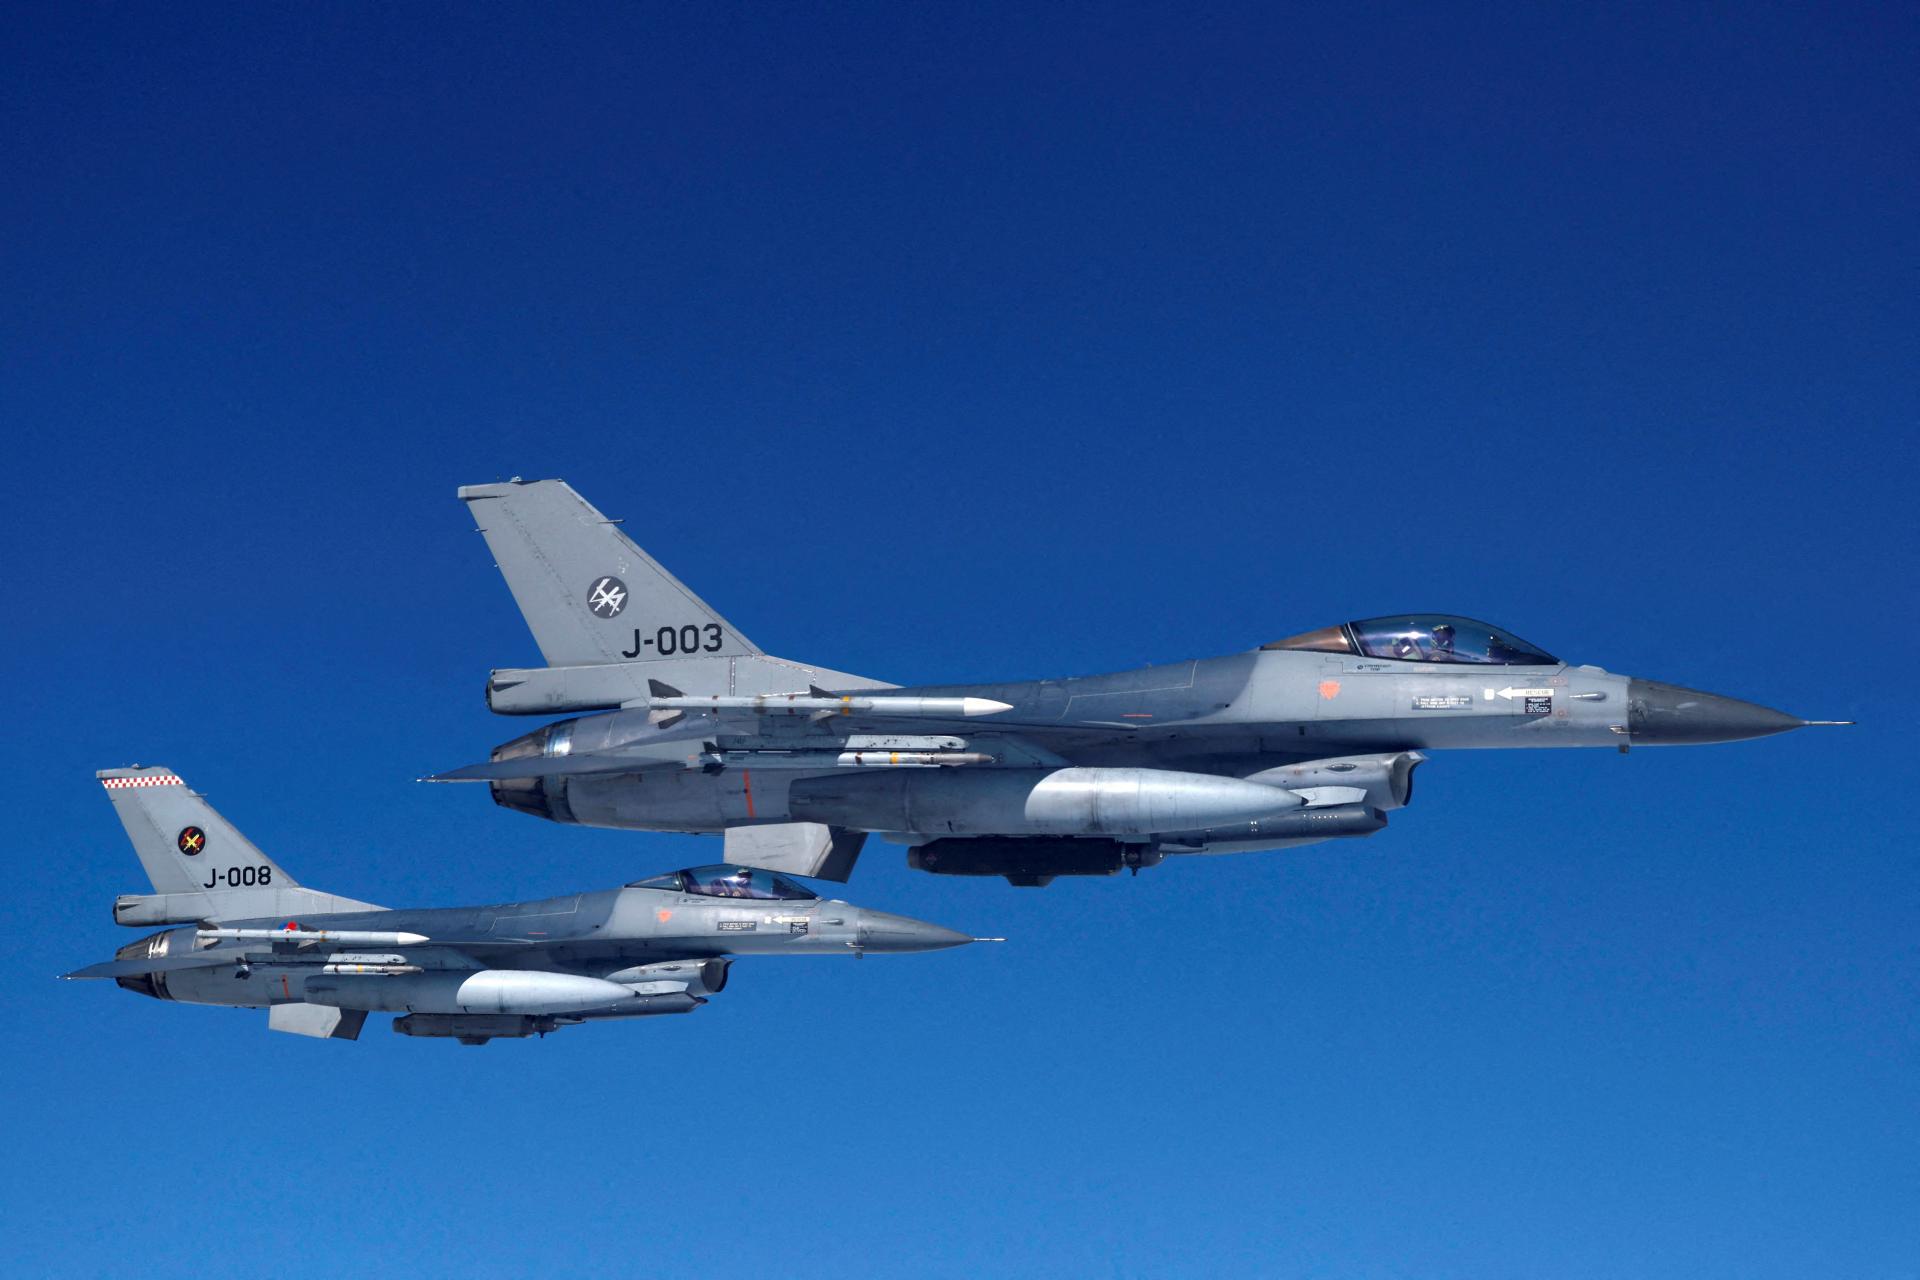 Nóri poodhalili, na čo využije Ukrajina stíhačky F-16: Podkúria hlbšie v ruskom tyle